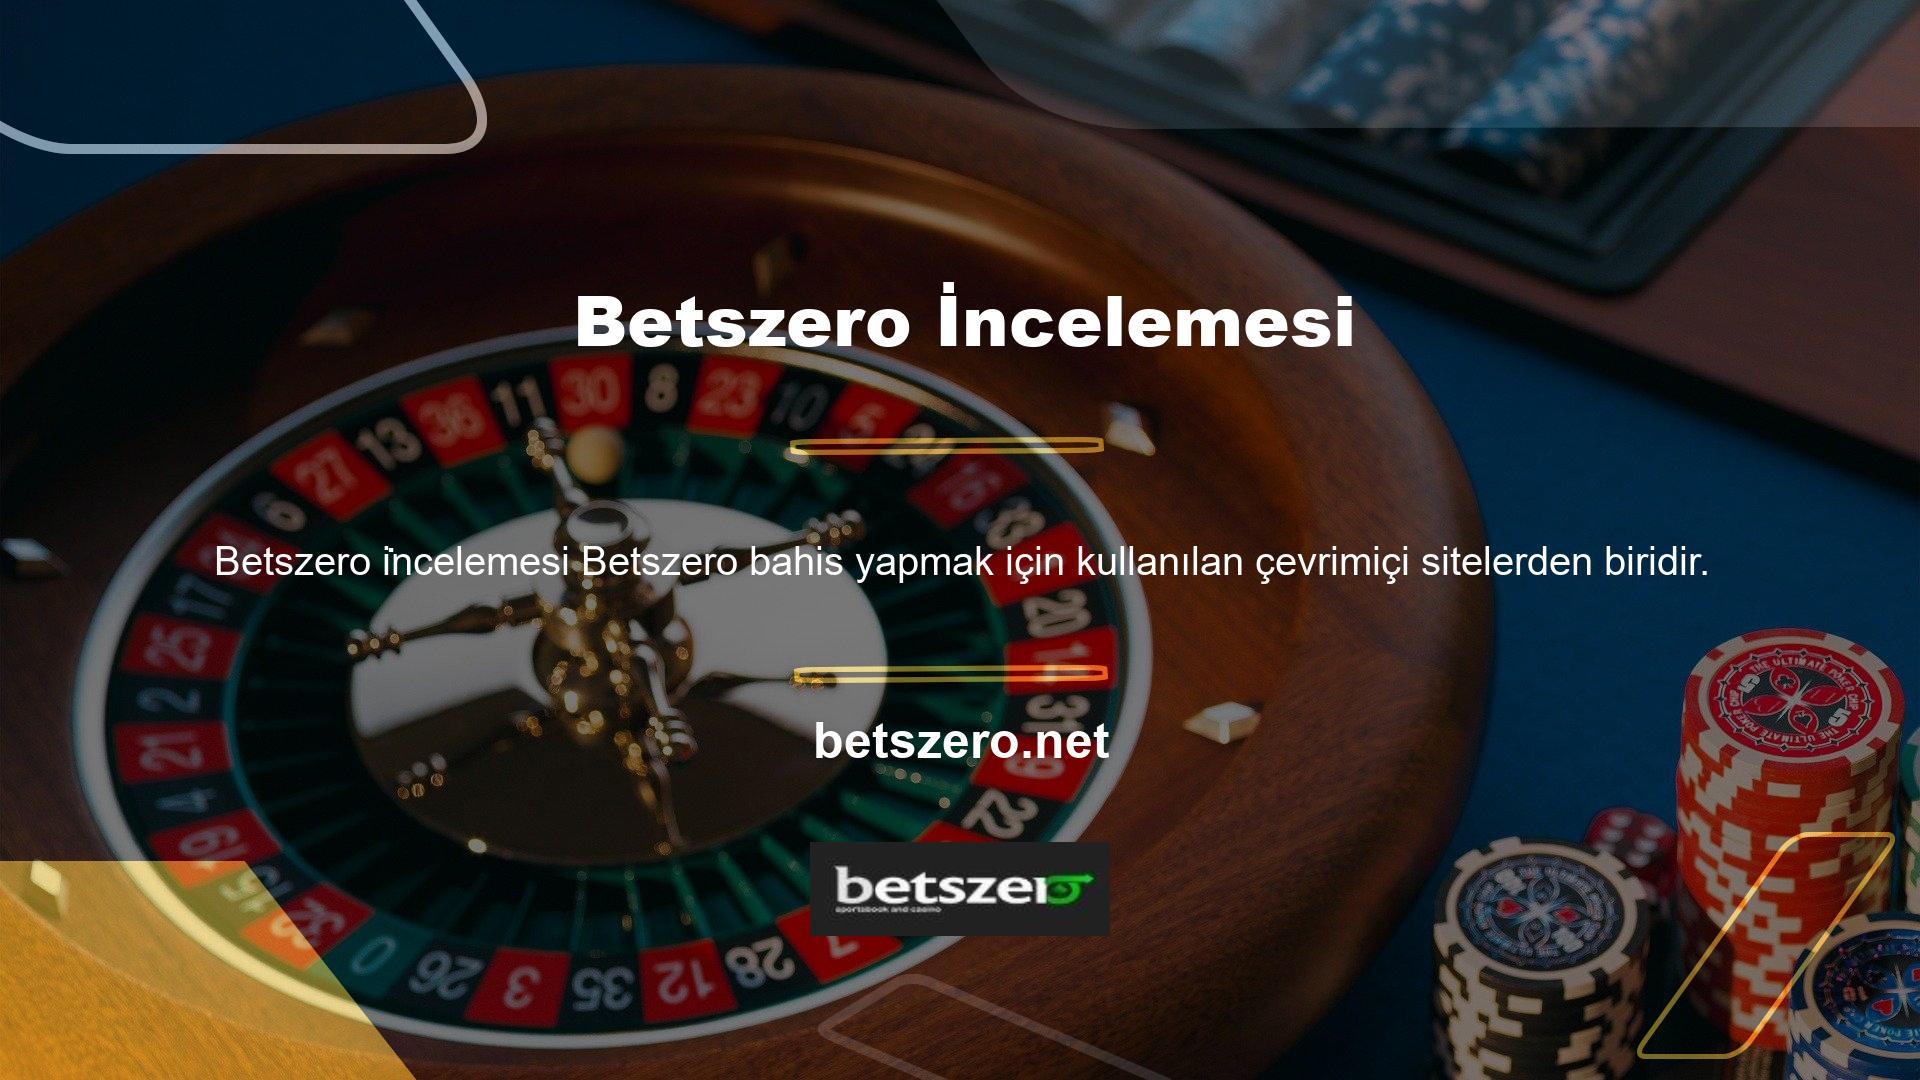 "Betszero altyapısı casino endüstrisindeki birçok karardan biridir